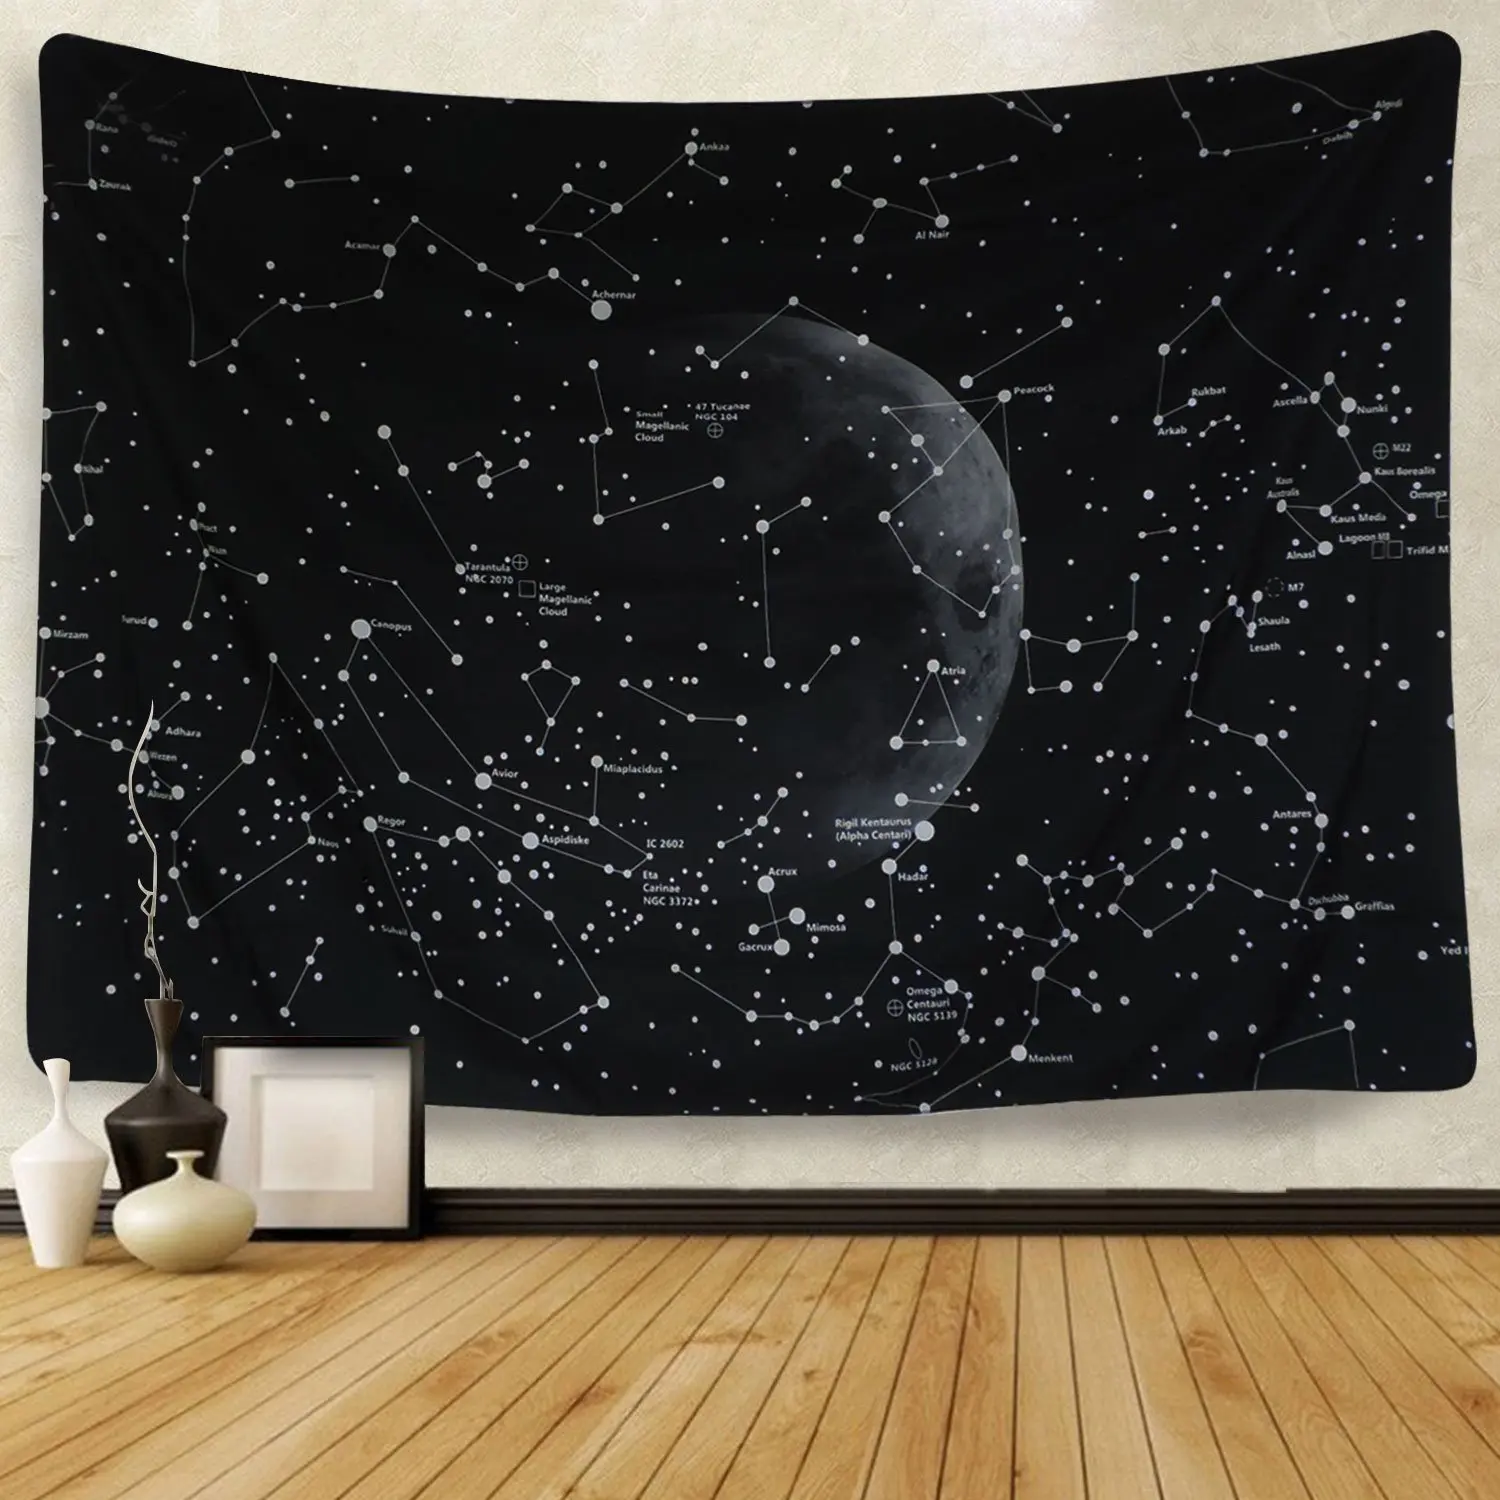 Гобелен с рисунком звездного неба, Галактическая планета, настенный гобелен с созвездием, богемский настенный гобелен, черный чехол на кровать, диван-одеяло